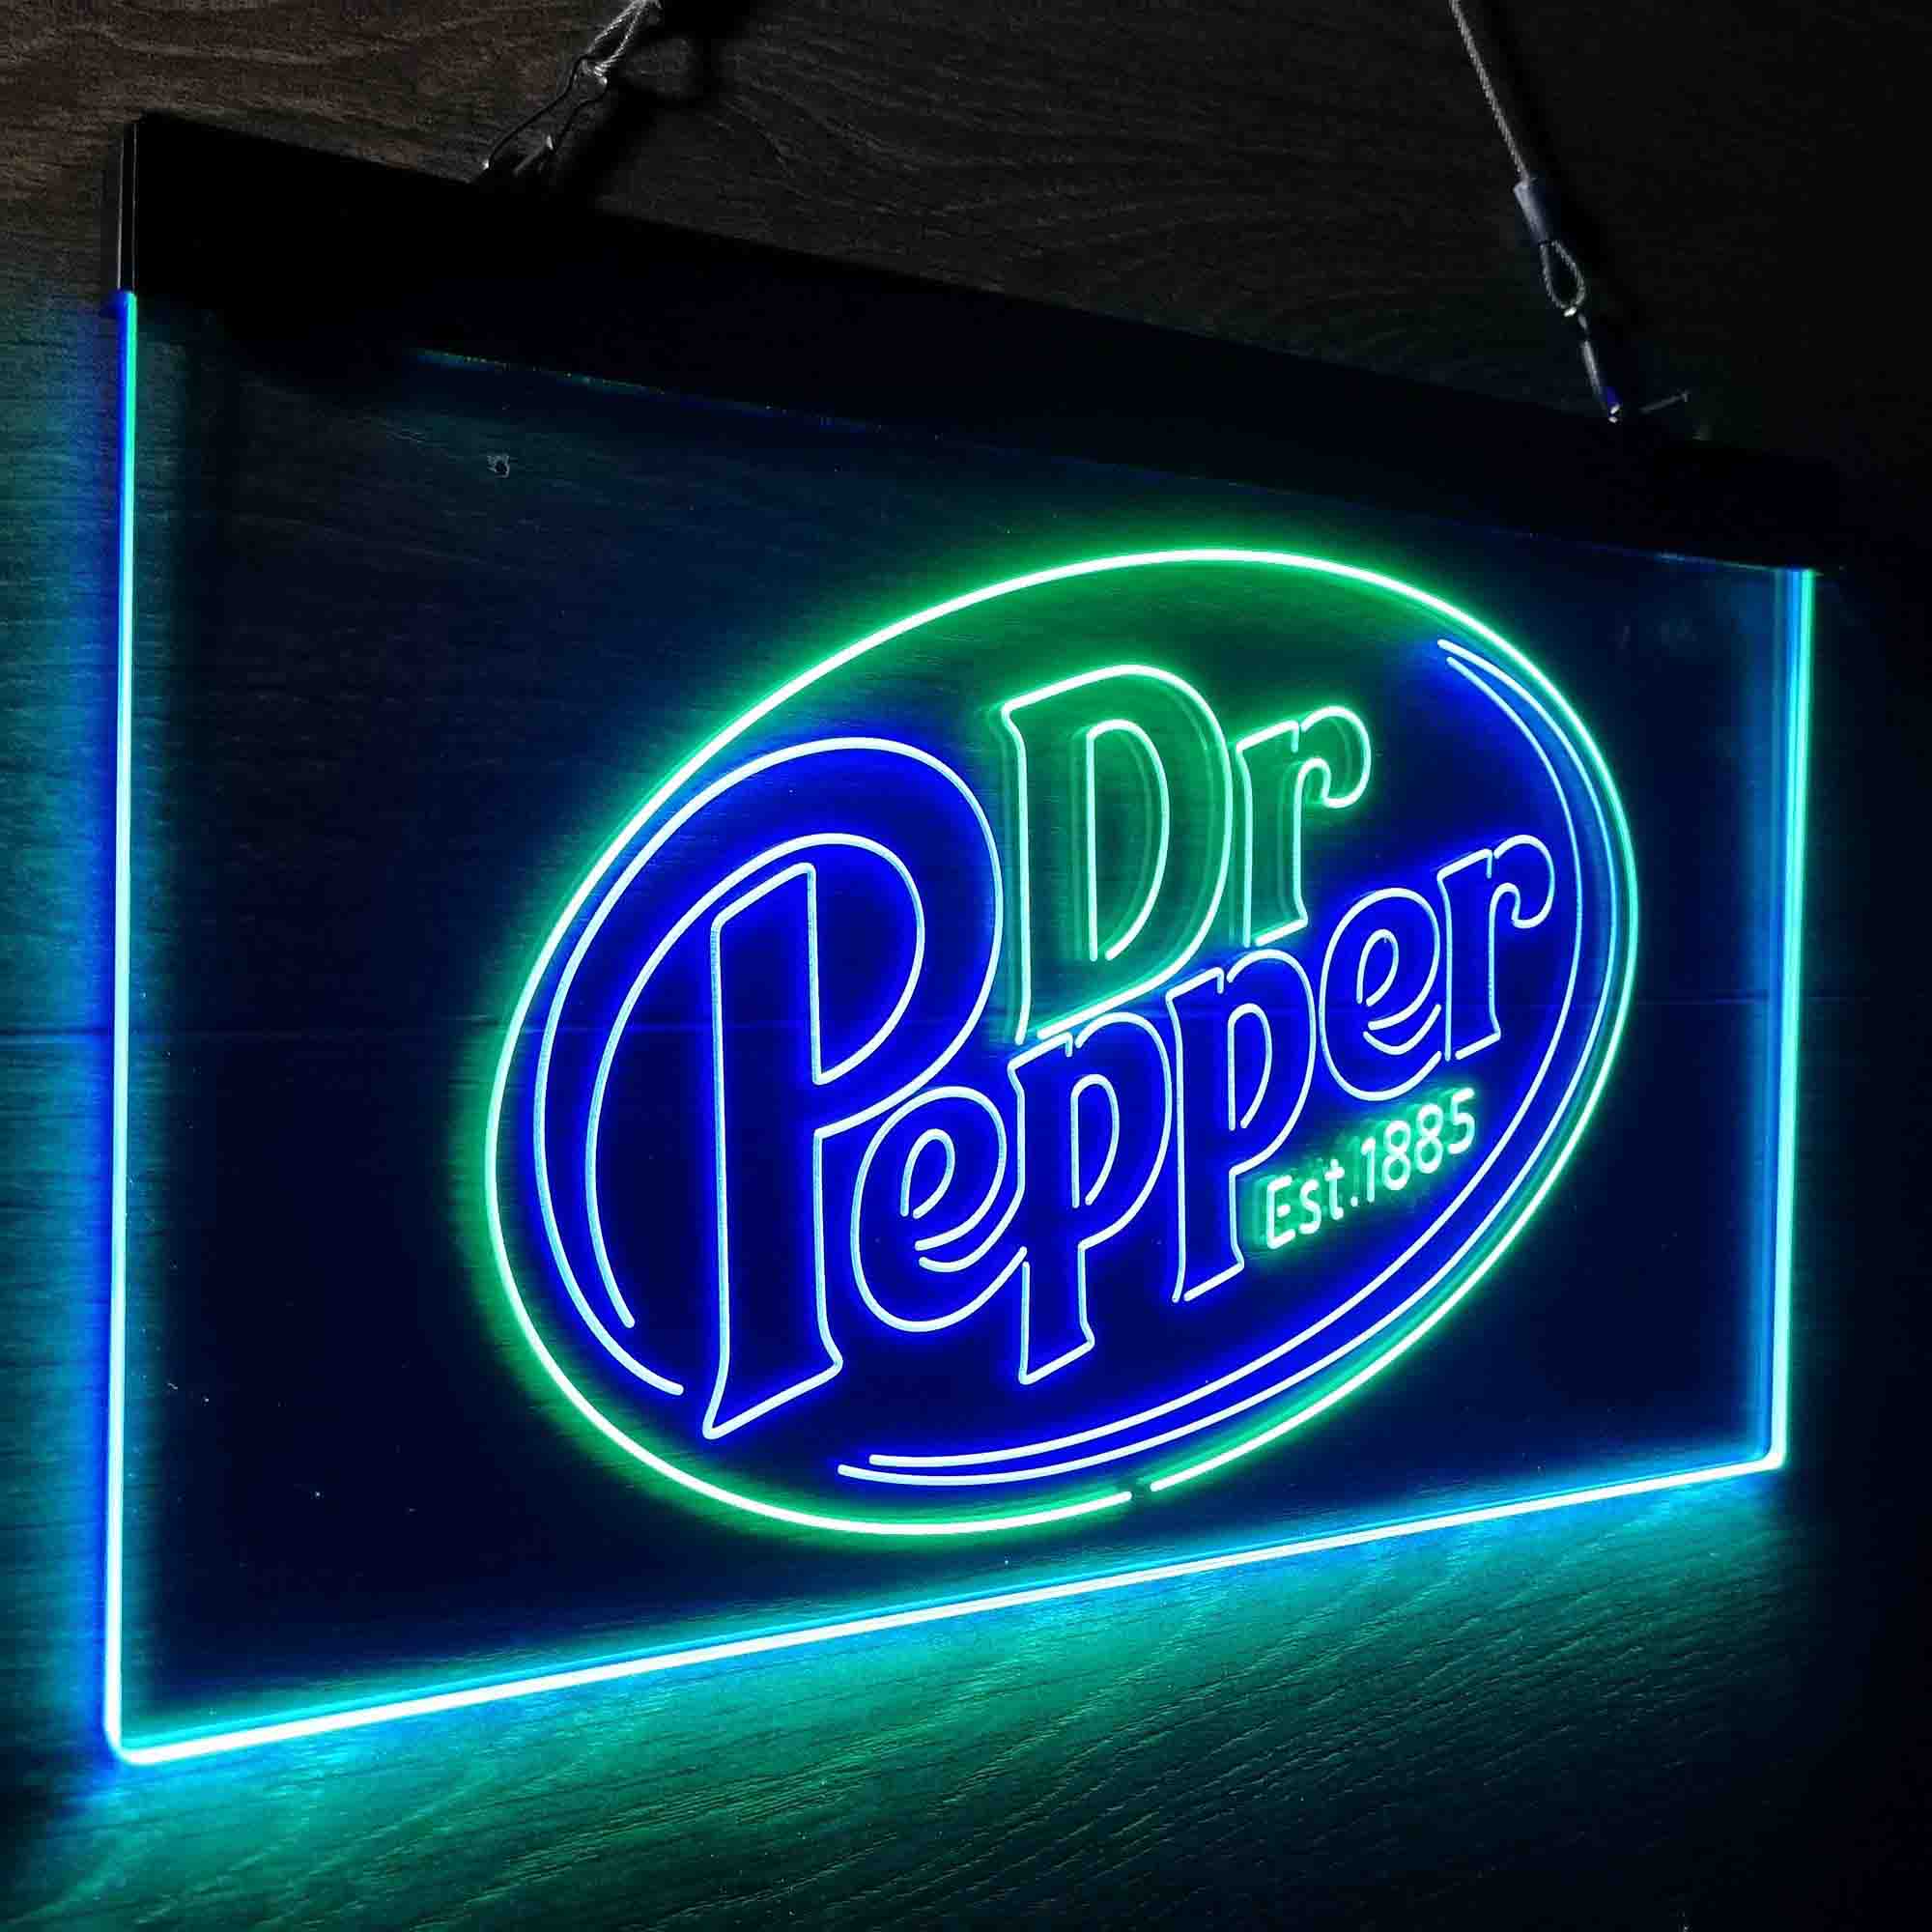 Dr Pepper Bar Est 1885 Neon LED Sign